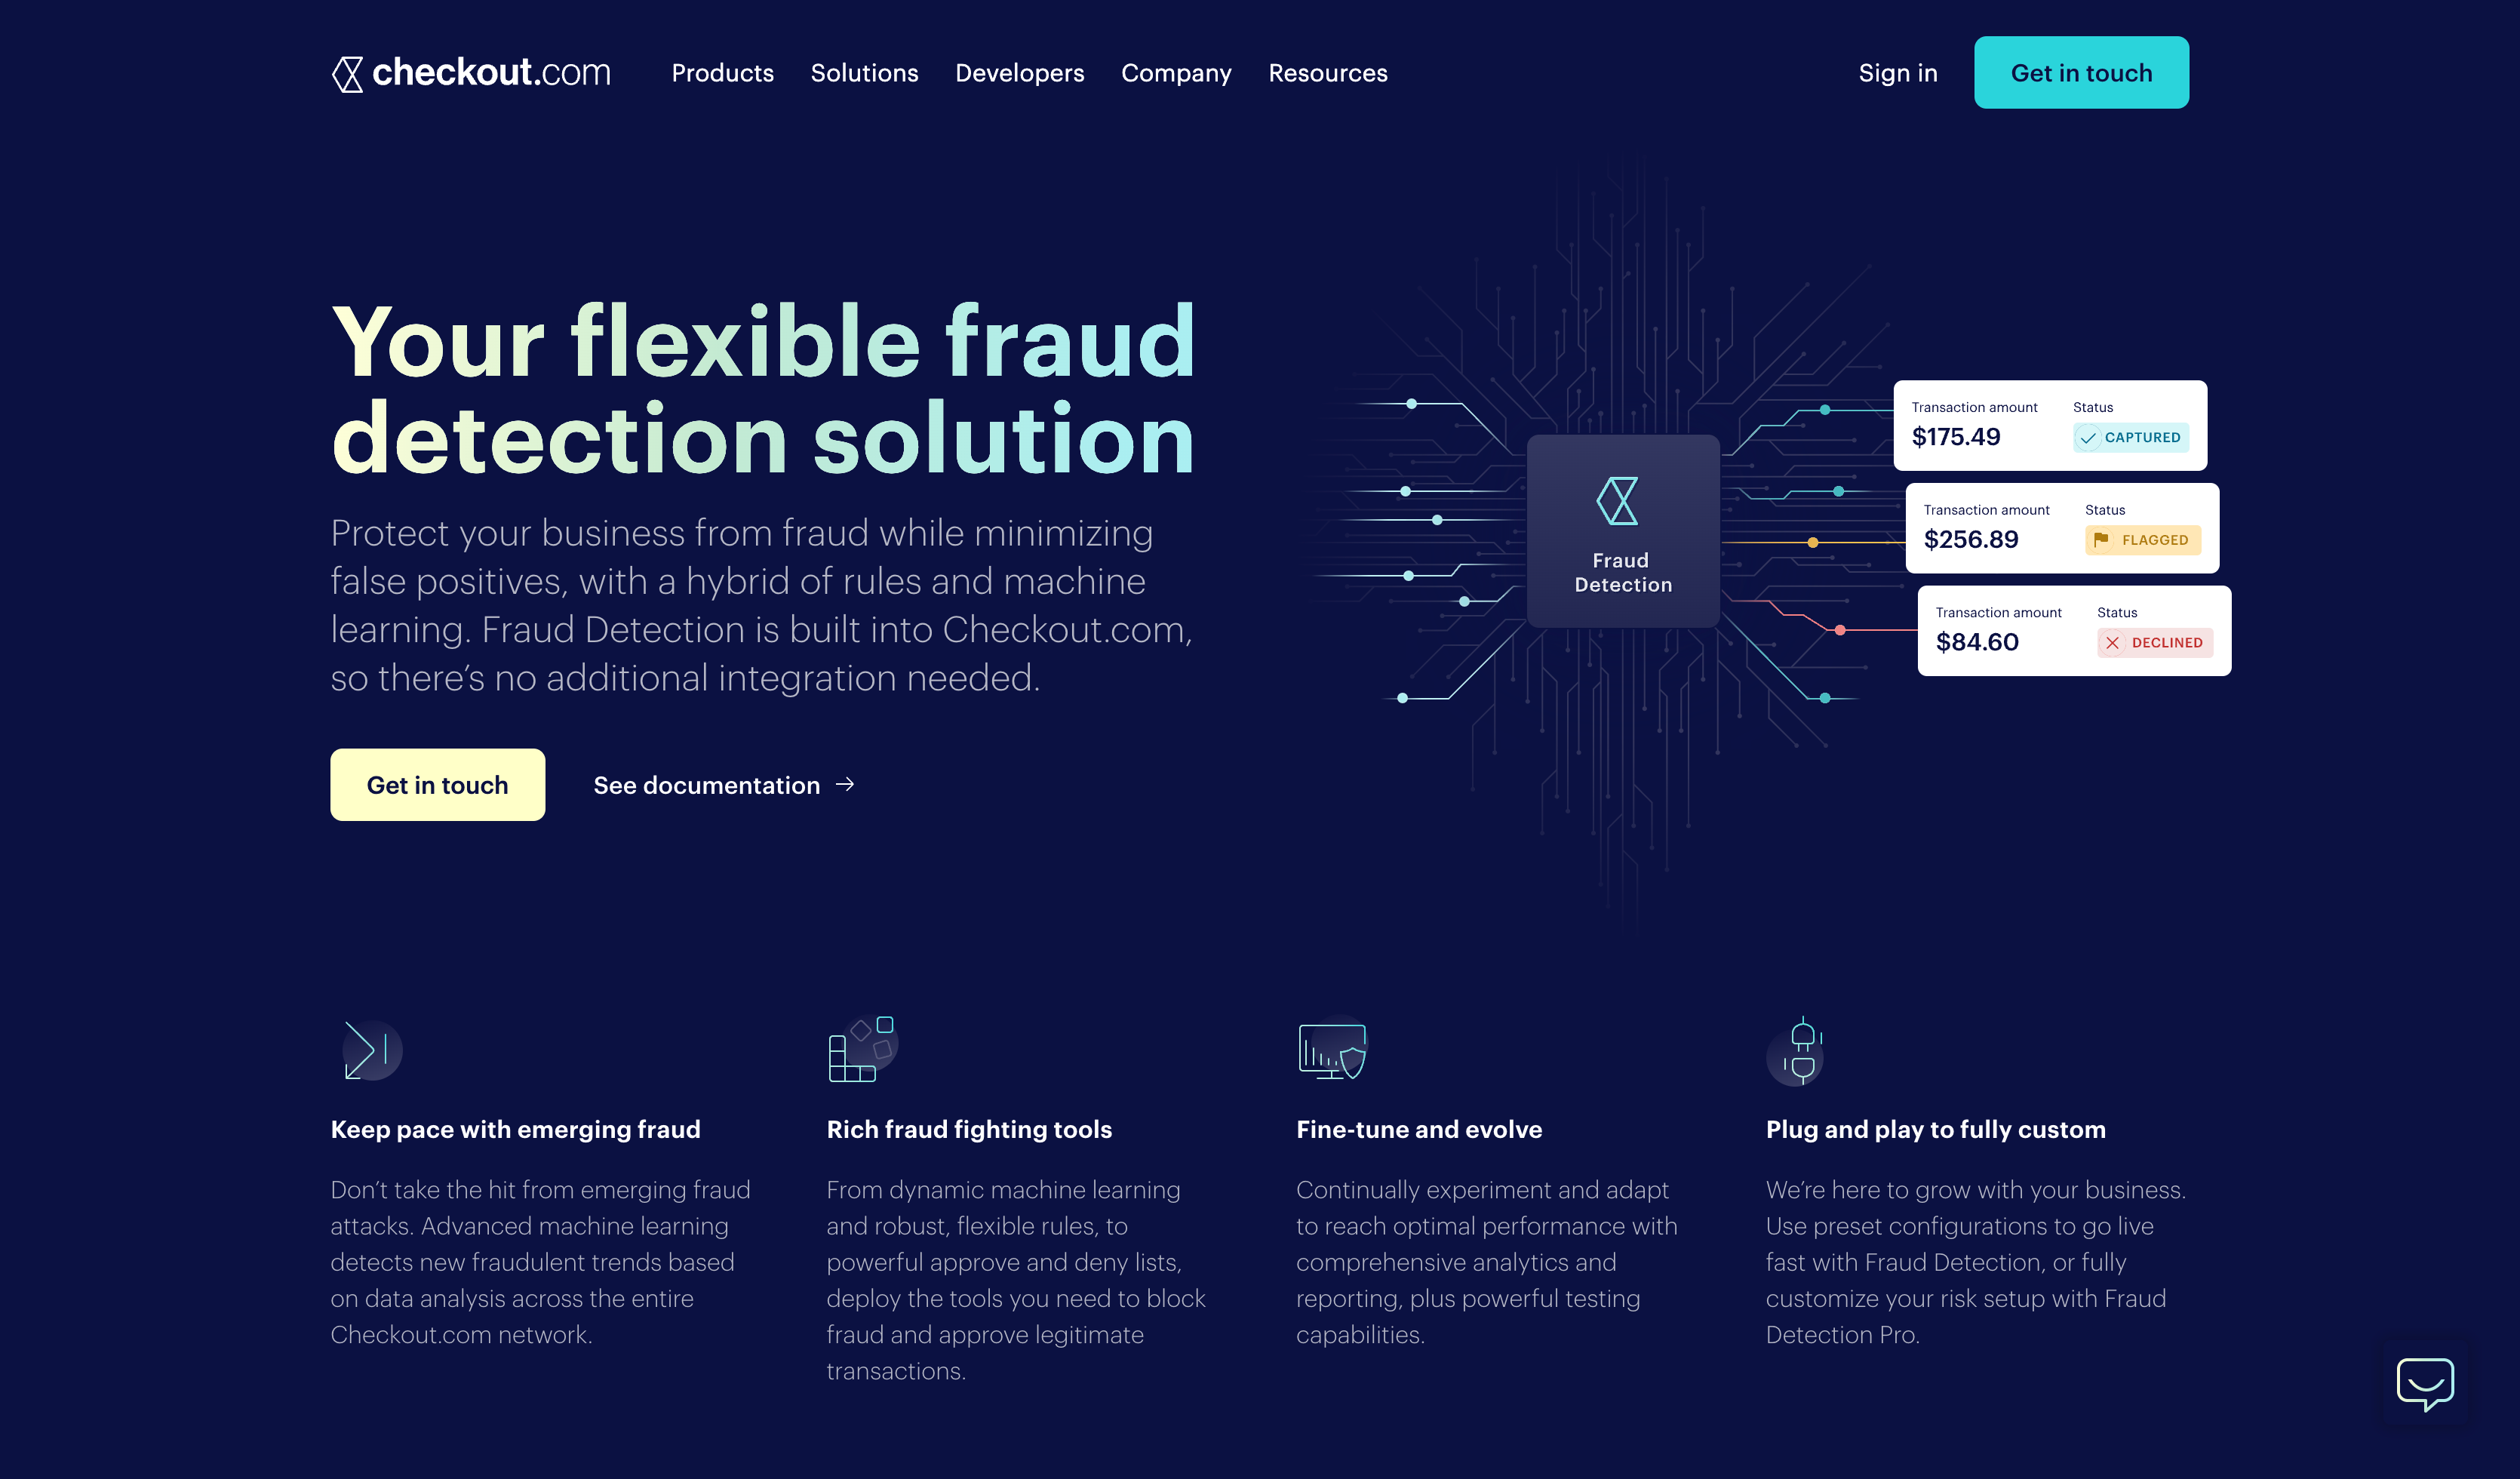 Checkout.com Fraud detection